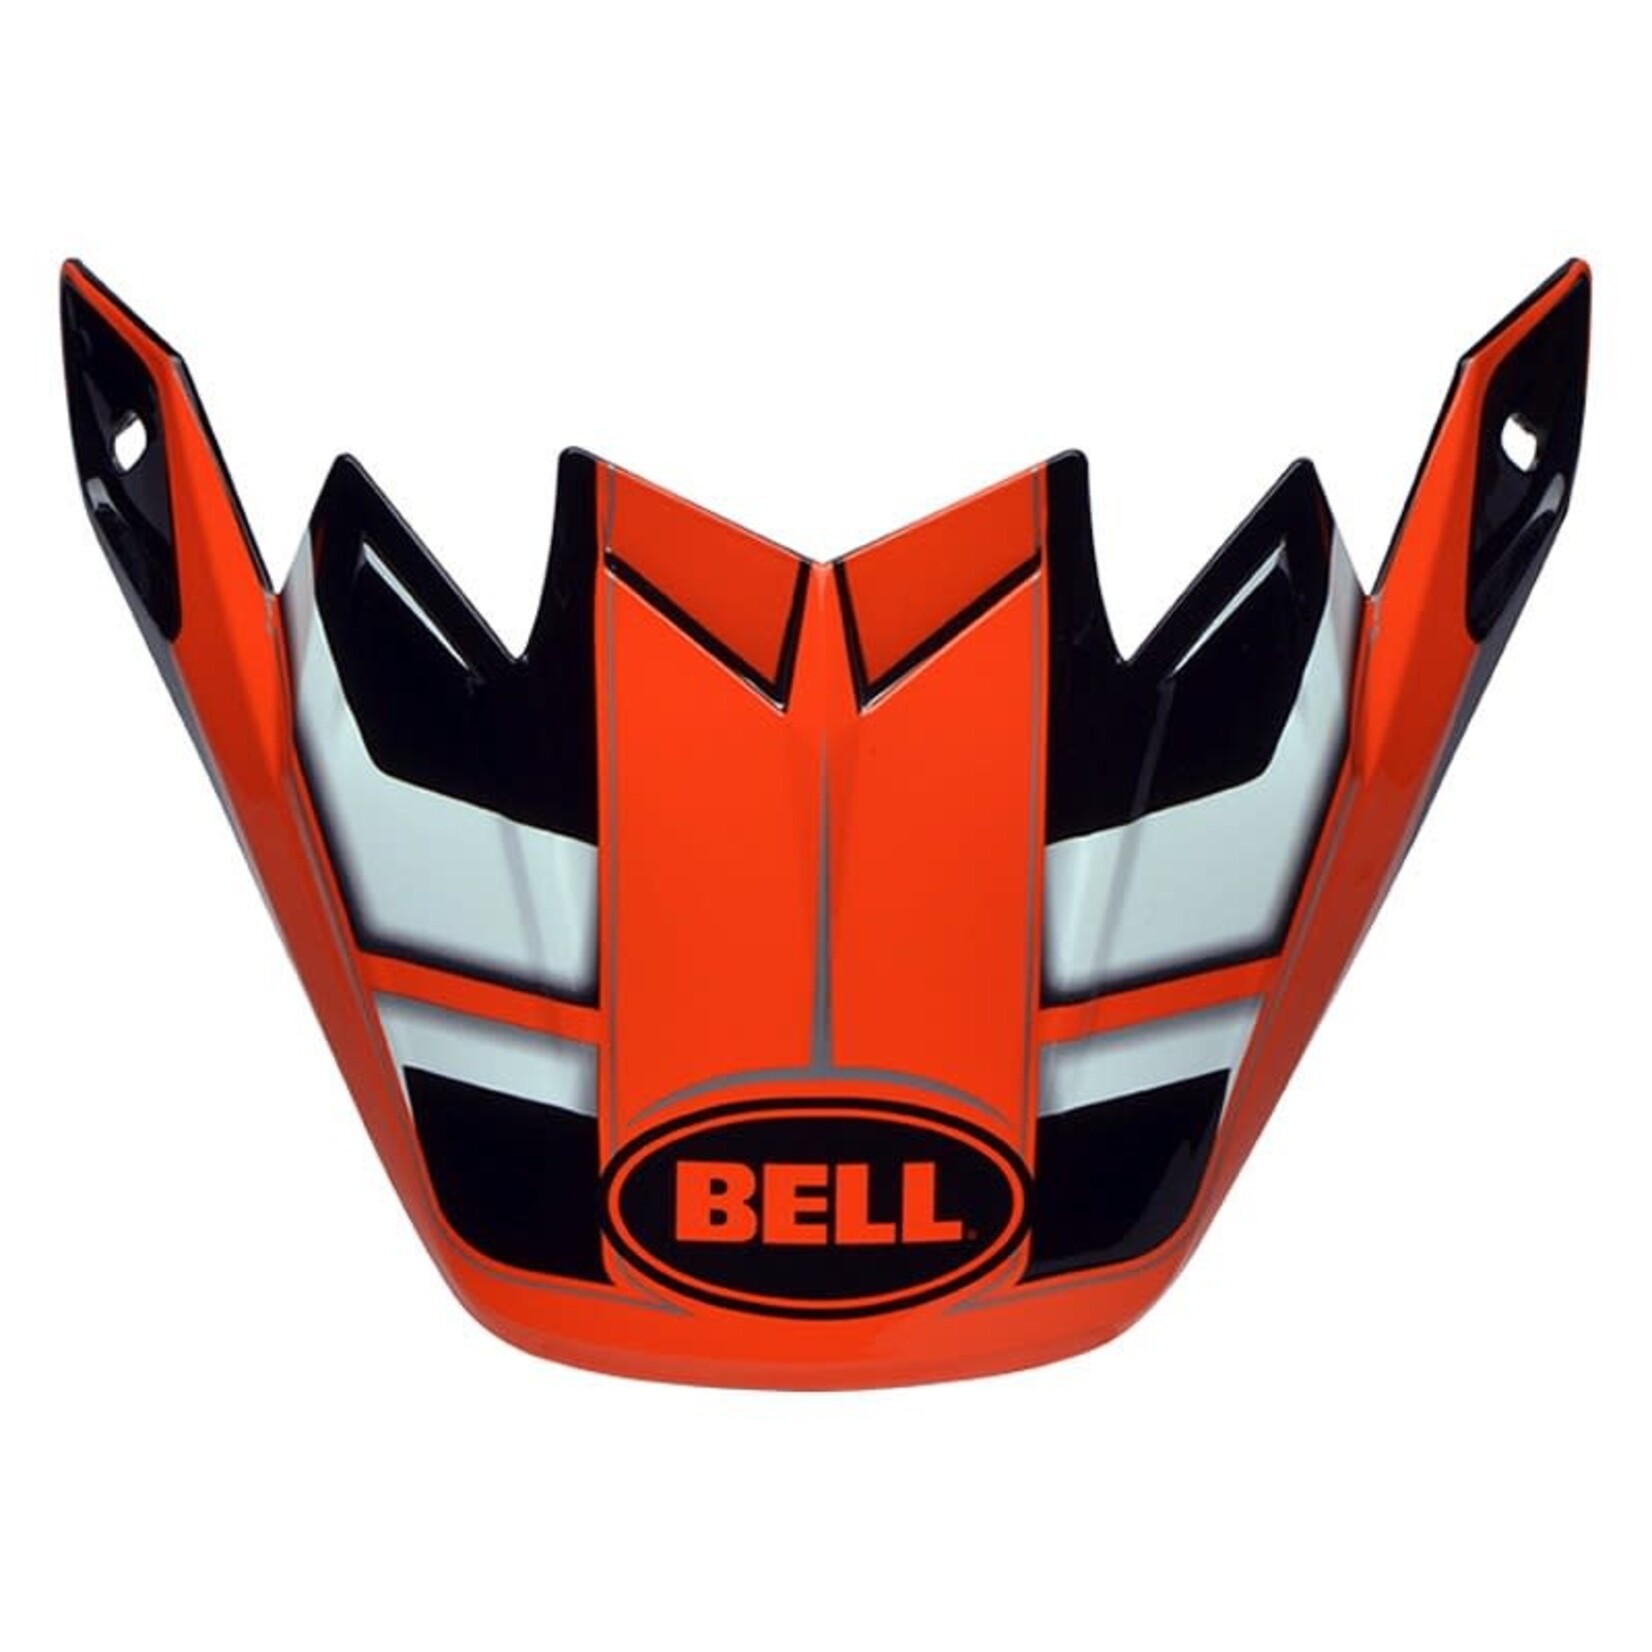 BELL MOTO 9 FLEX VISOR FACTORY ORANGE/ BLACK